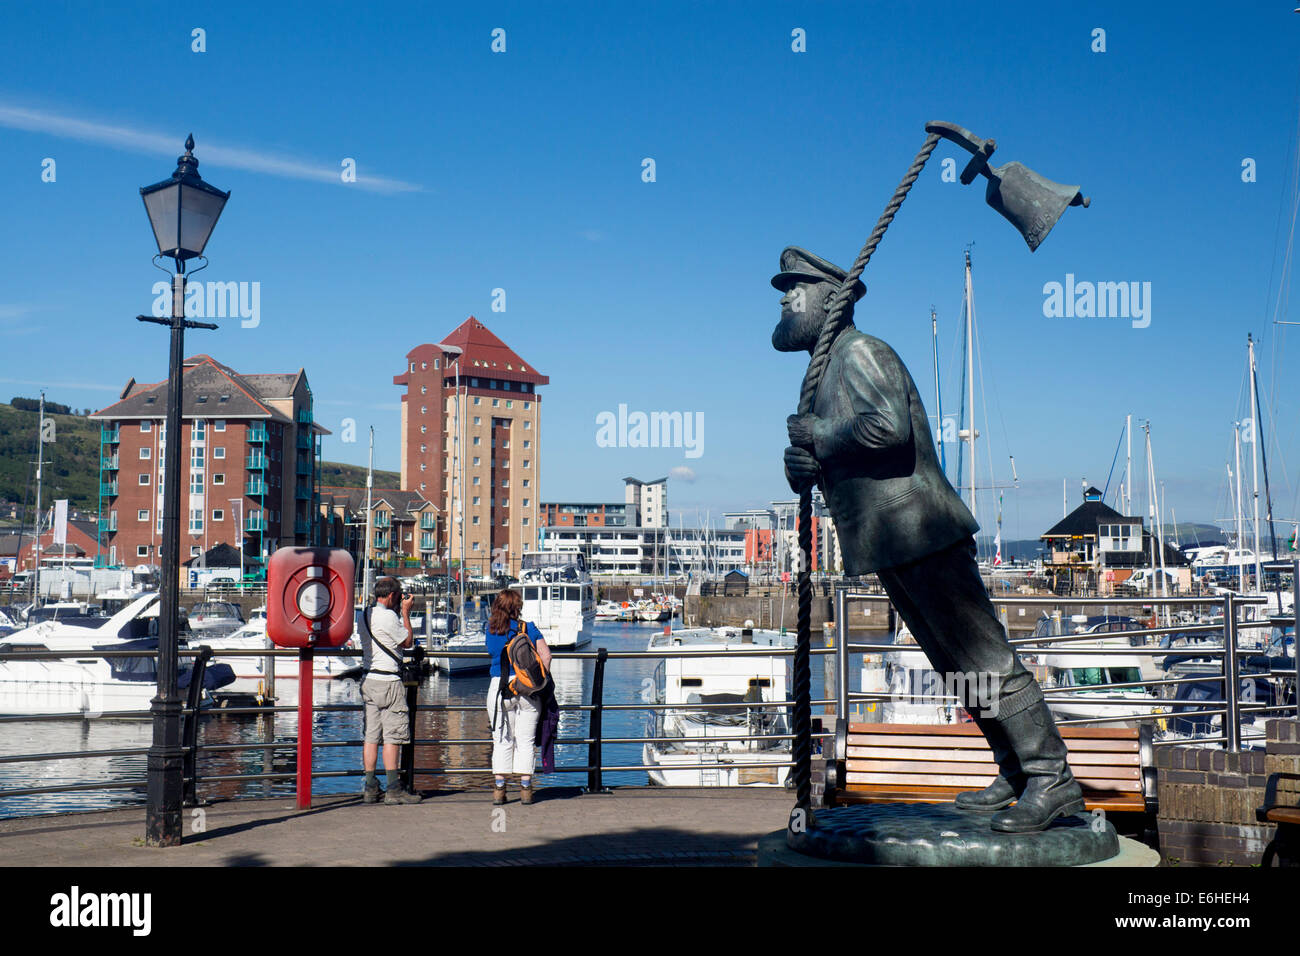 Le Capitaine Cat statue (Dylan Thomas Sous Bois Lait caractère) avec les touristes de prendre des photos derrière Swansea Marina Pays de Galles UK Banque D'Images